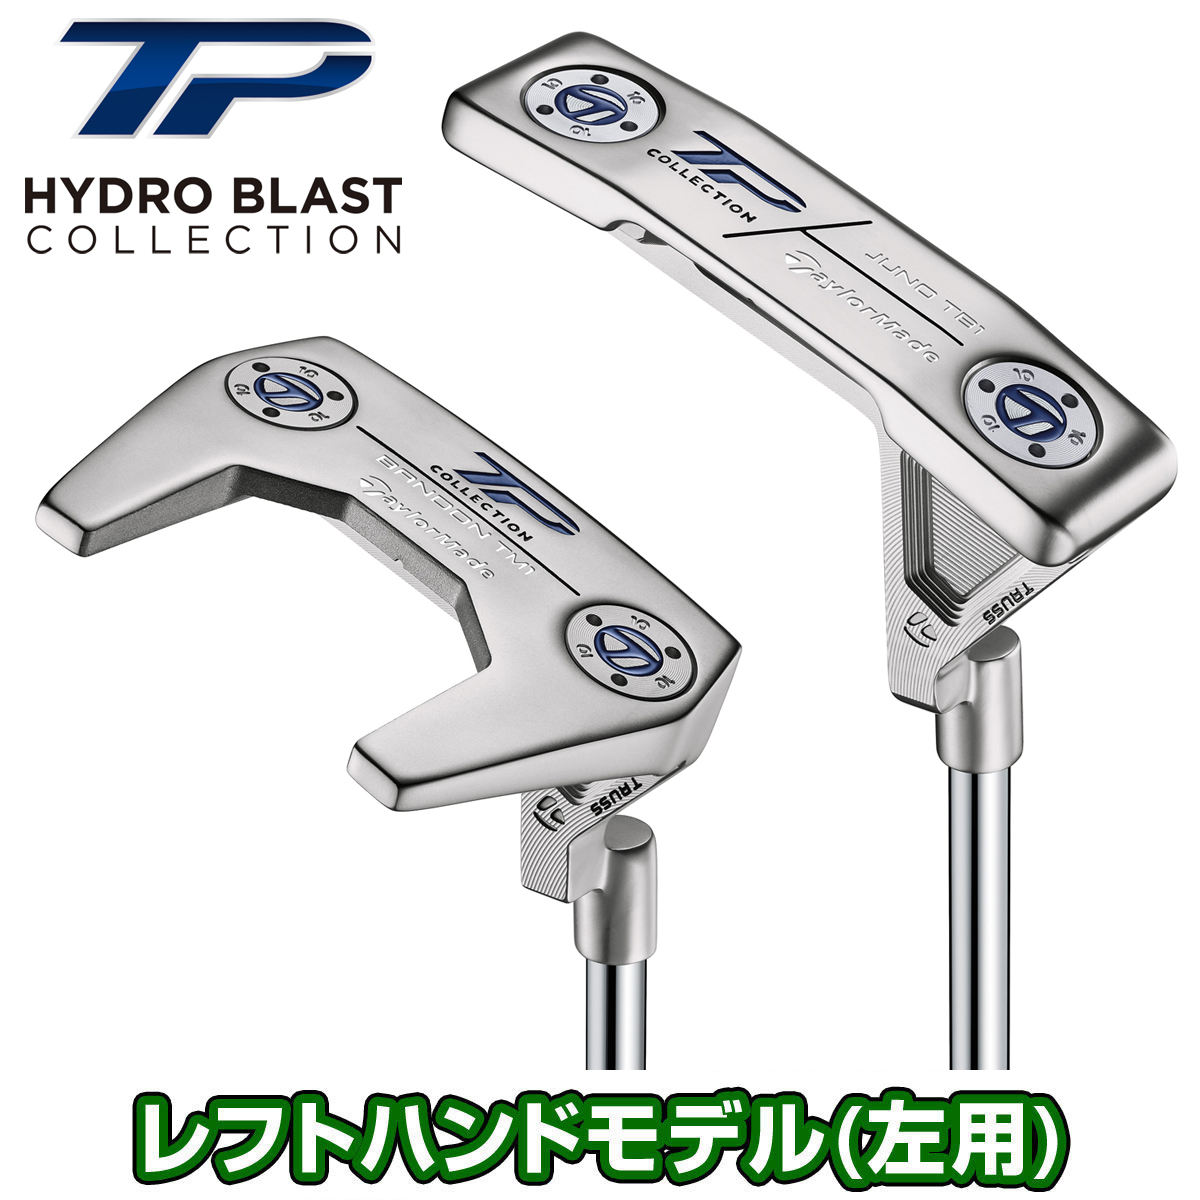 TaylorMade(テーラーメイド)日本正規品 TP COLLECTION HYDRO BLAST (ティーピーコレクションハイドロブラスト)パター 2021モデル 「ツアートラスモデル レフトハンドモデル(左用)」 